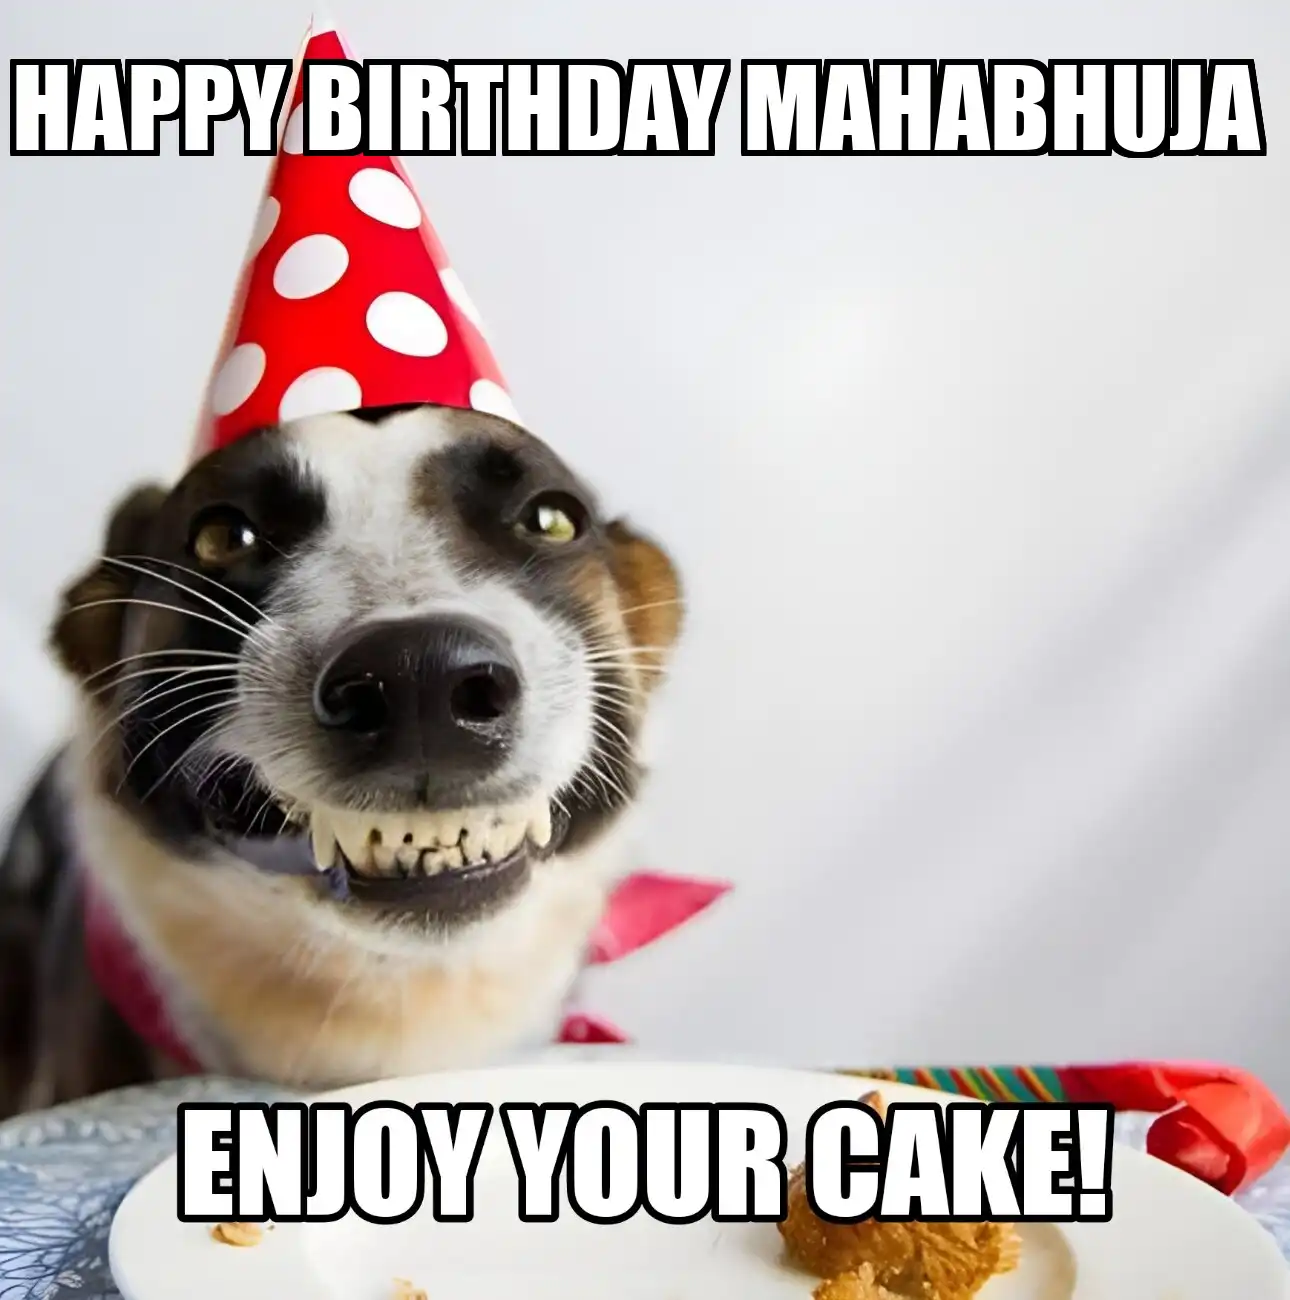 Happy Birthday Mahabhuja Enjoy Your Cake Dog Meme